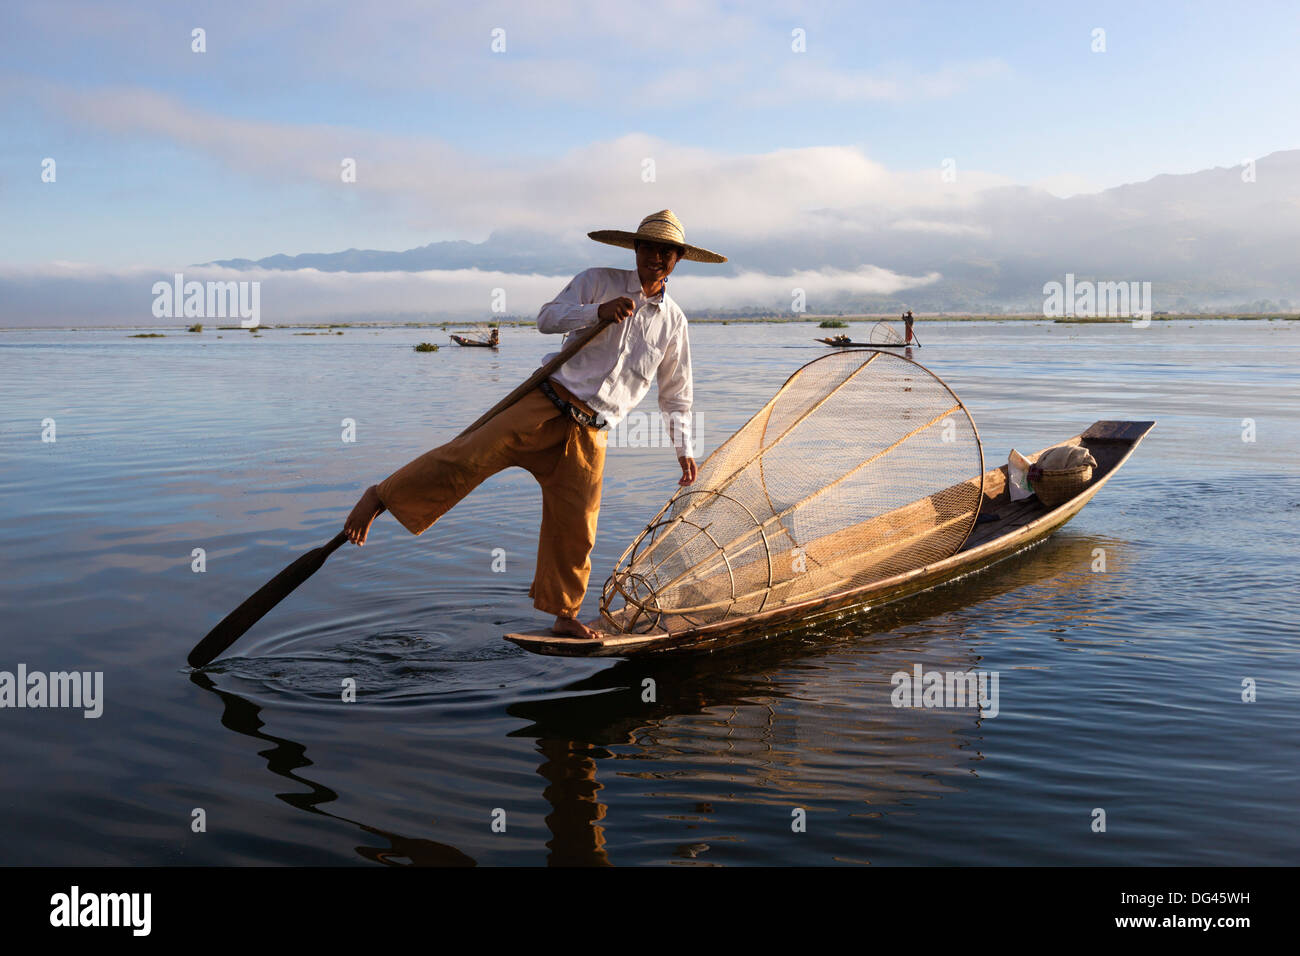 Intha leg-rower fisherman, Inle Lake, Shan State, Myanmar (Burma), Asia Stock Photo